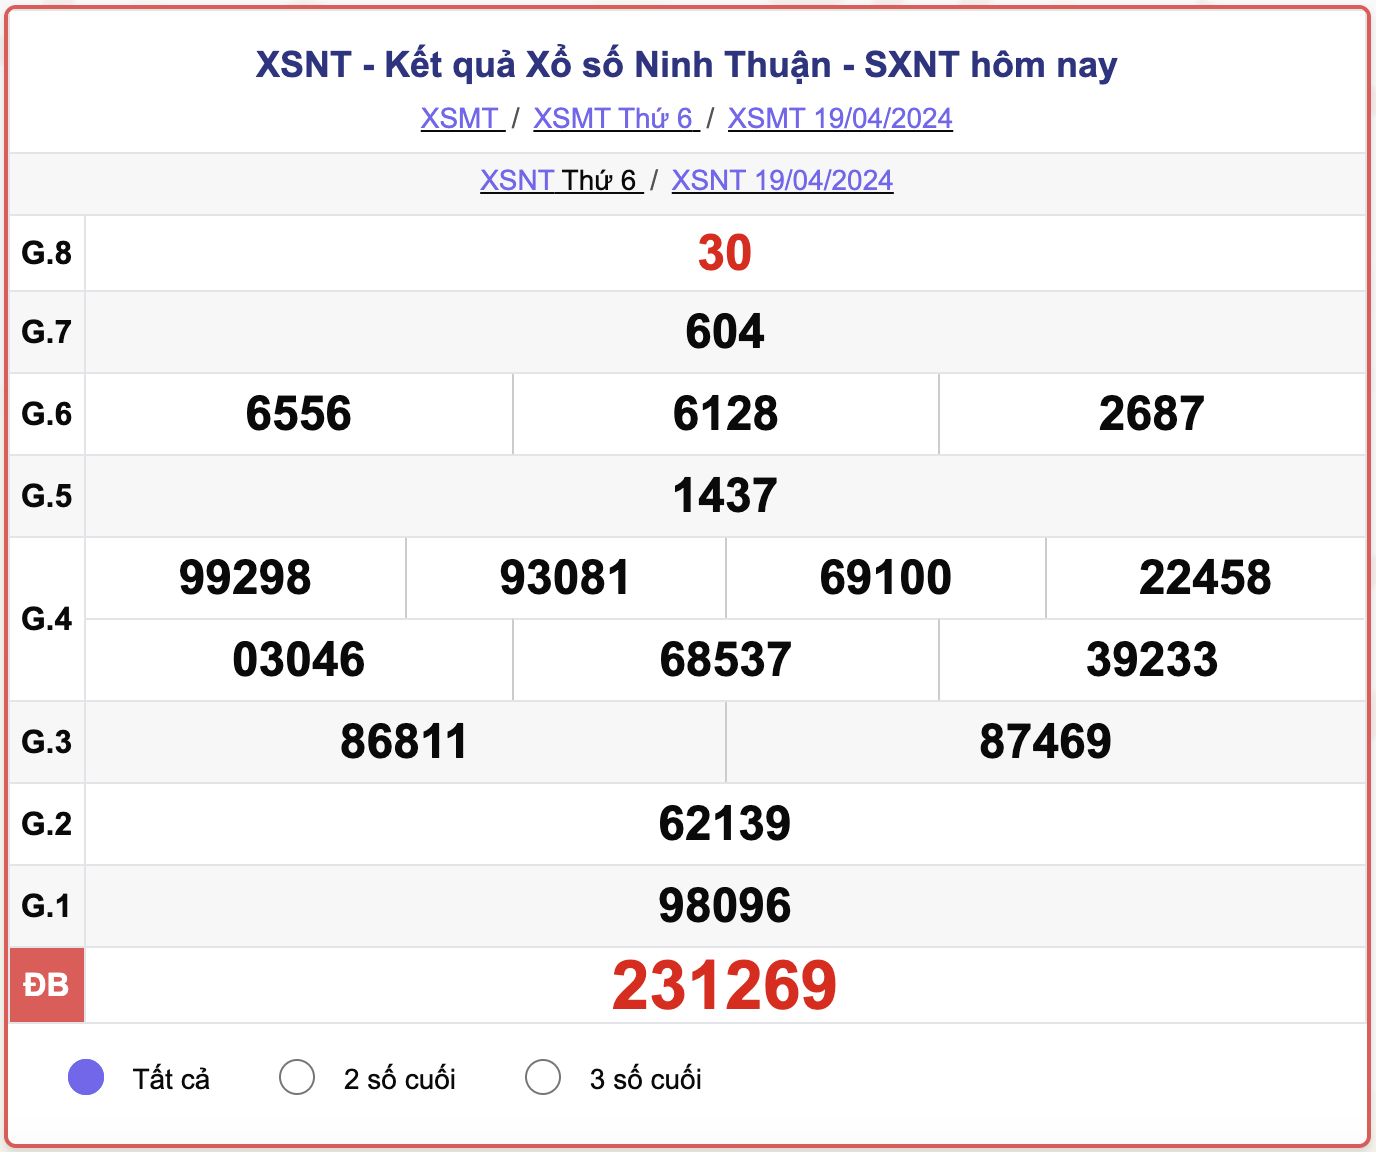 XSNT thứ 6, kết quả xổ số Ninh Thuận ngày 19/4/2024.